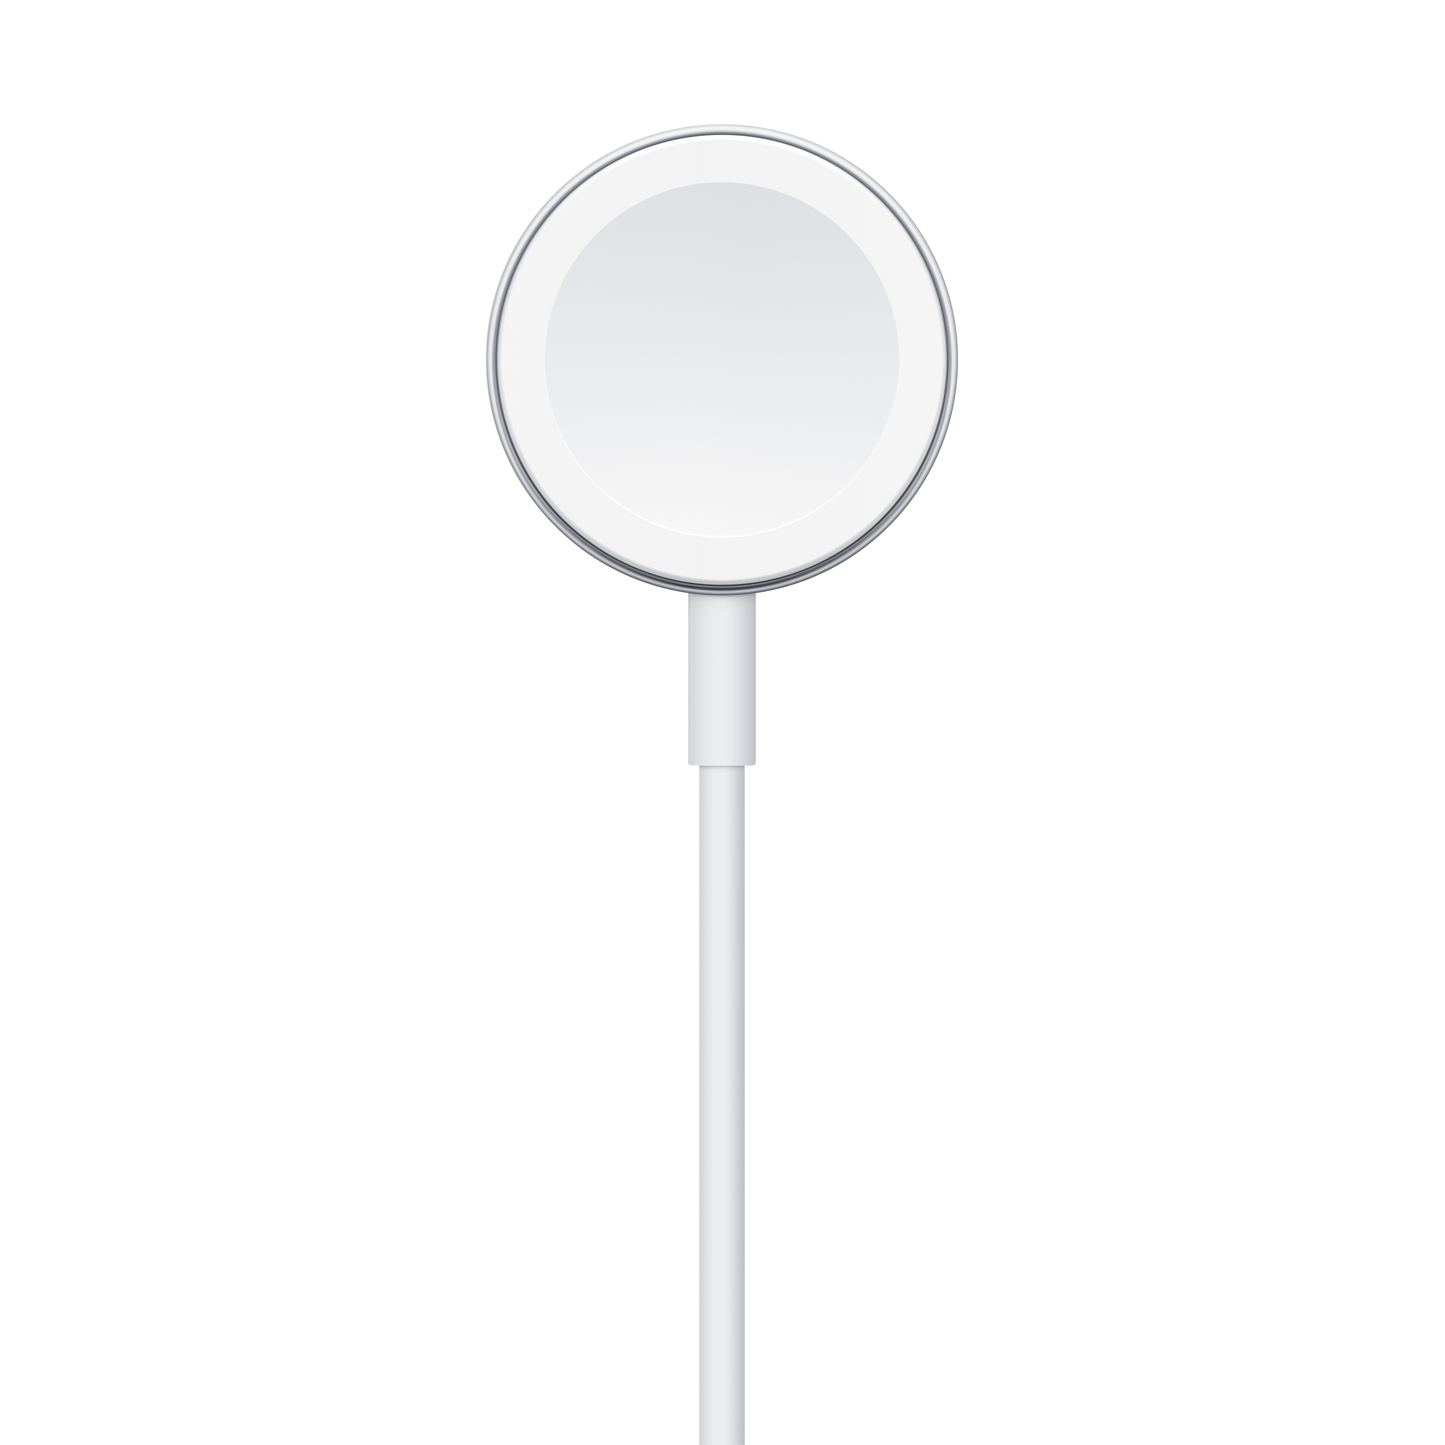 Cable de carga magnética para el Apple Watch (1 metro)